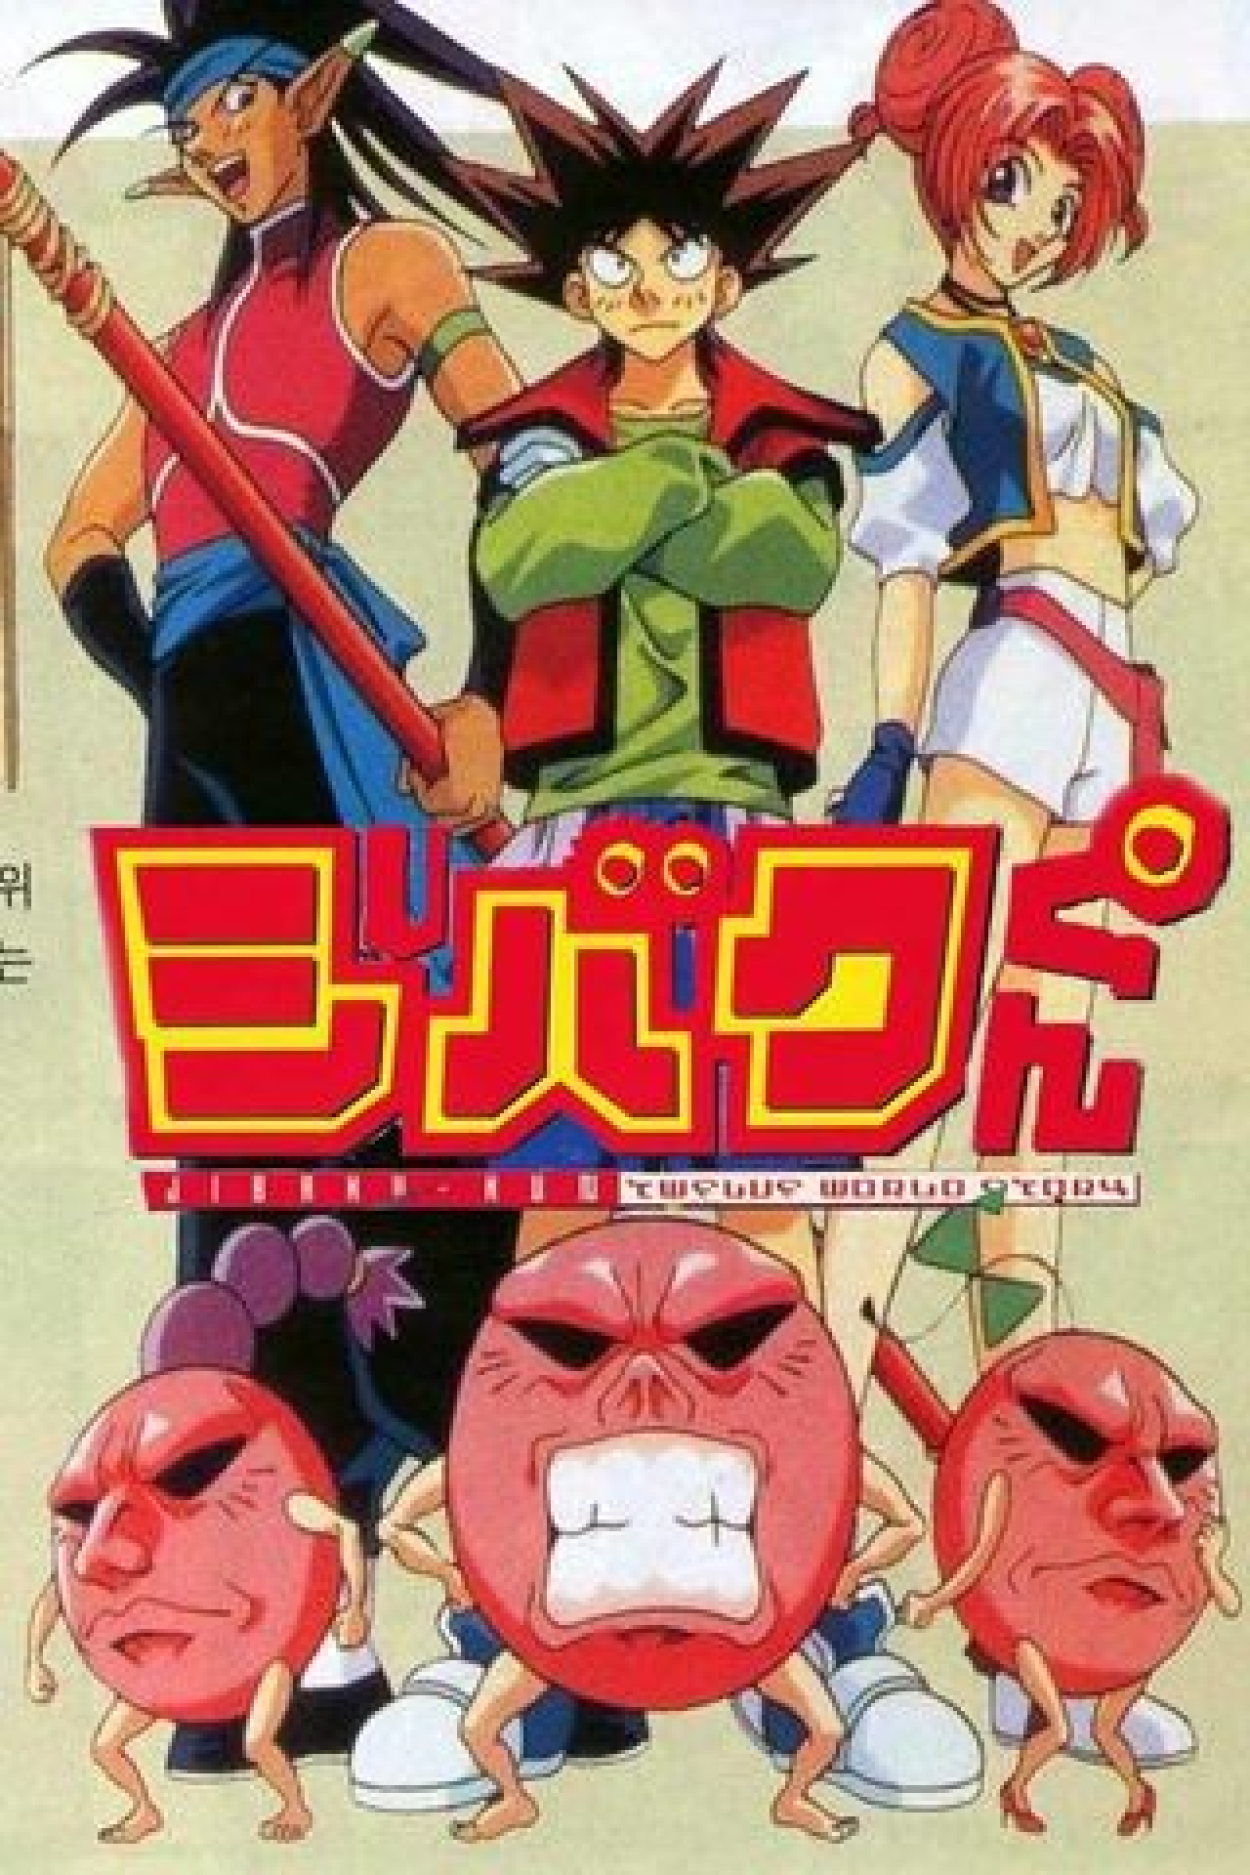 Anime Dragon Quest: Dai no Daibouken - Sinopse, Trailers, Curiosidades e  muito mais - Cinema10